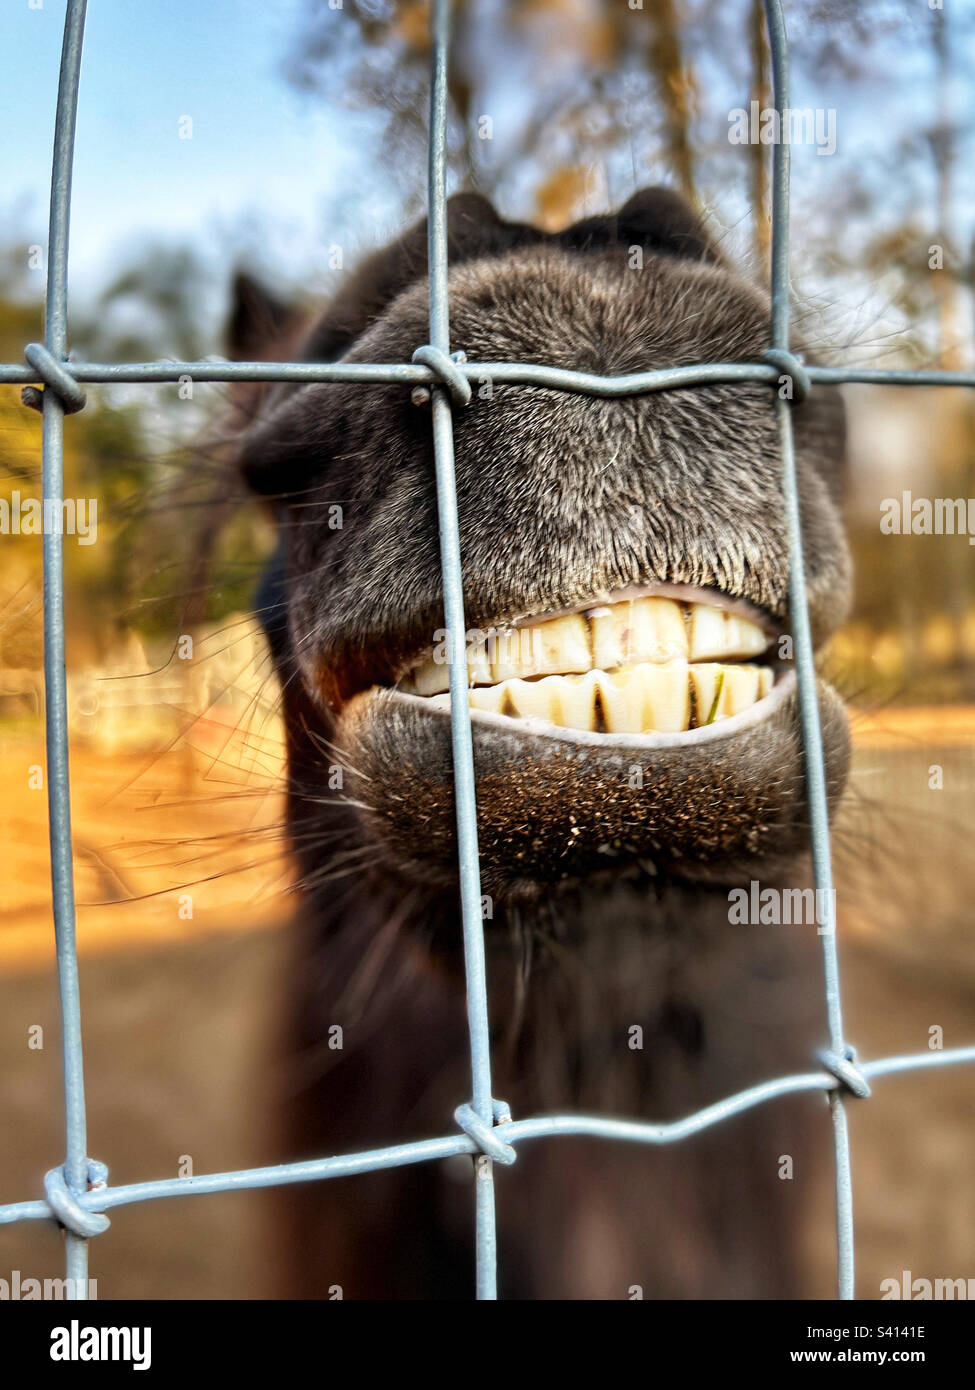 Primo piano di grandi denti, bocca e museruola di cavallo in miniatura dietro la recinzione. Sorridente e divertente. Foto Stock